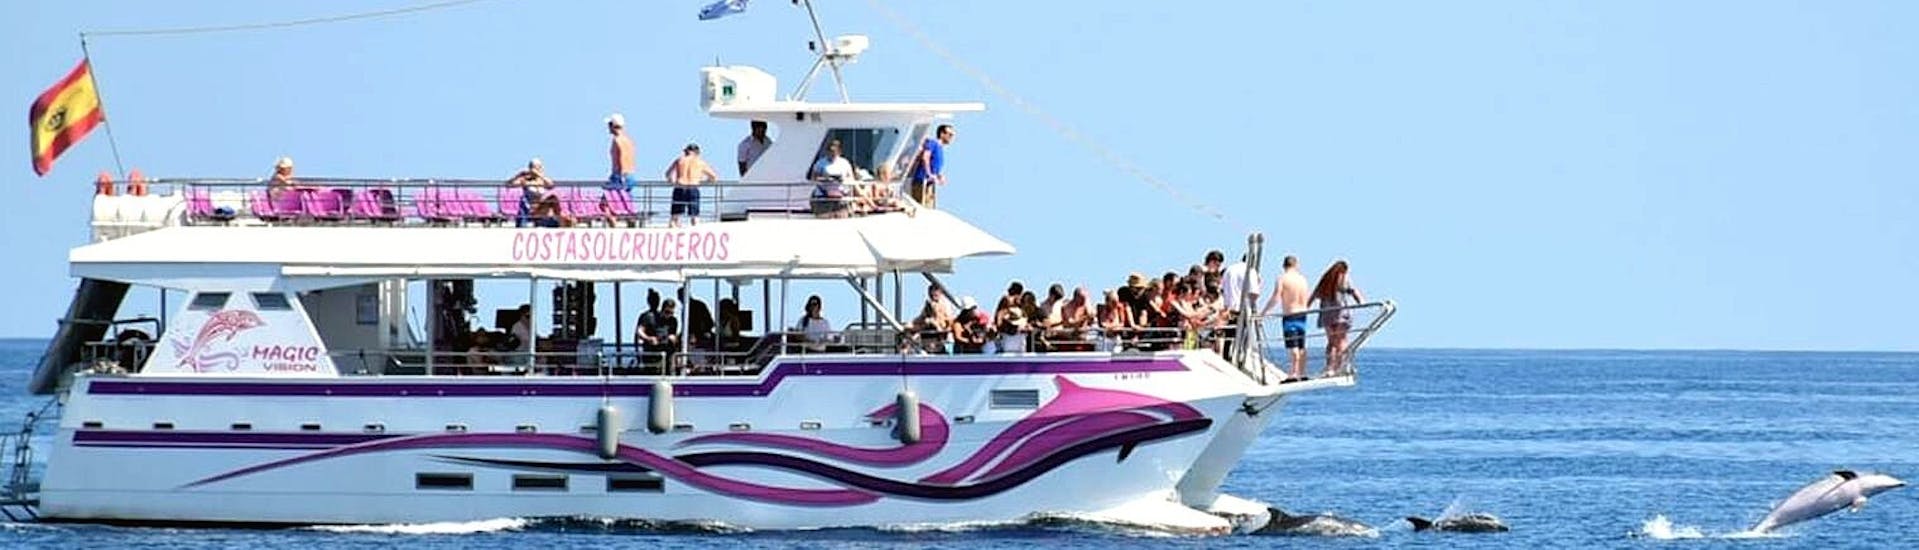 De Magic Vision catamaran cruisend op de baai van Benalmadena met deelnemers die plezier hebben aan boord, tijdens een catamaran boottocht in Benalmádena met dolfijnen spotten met Costasol Cruceros.